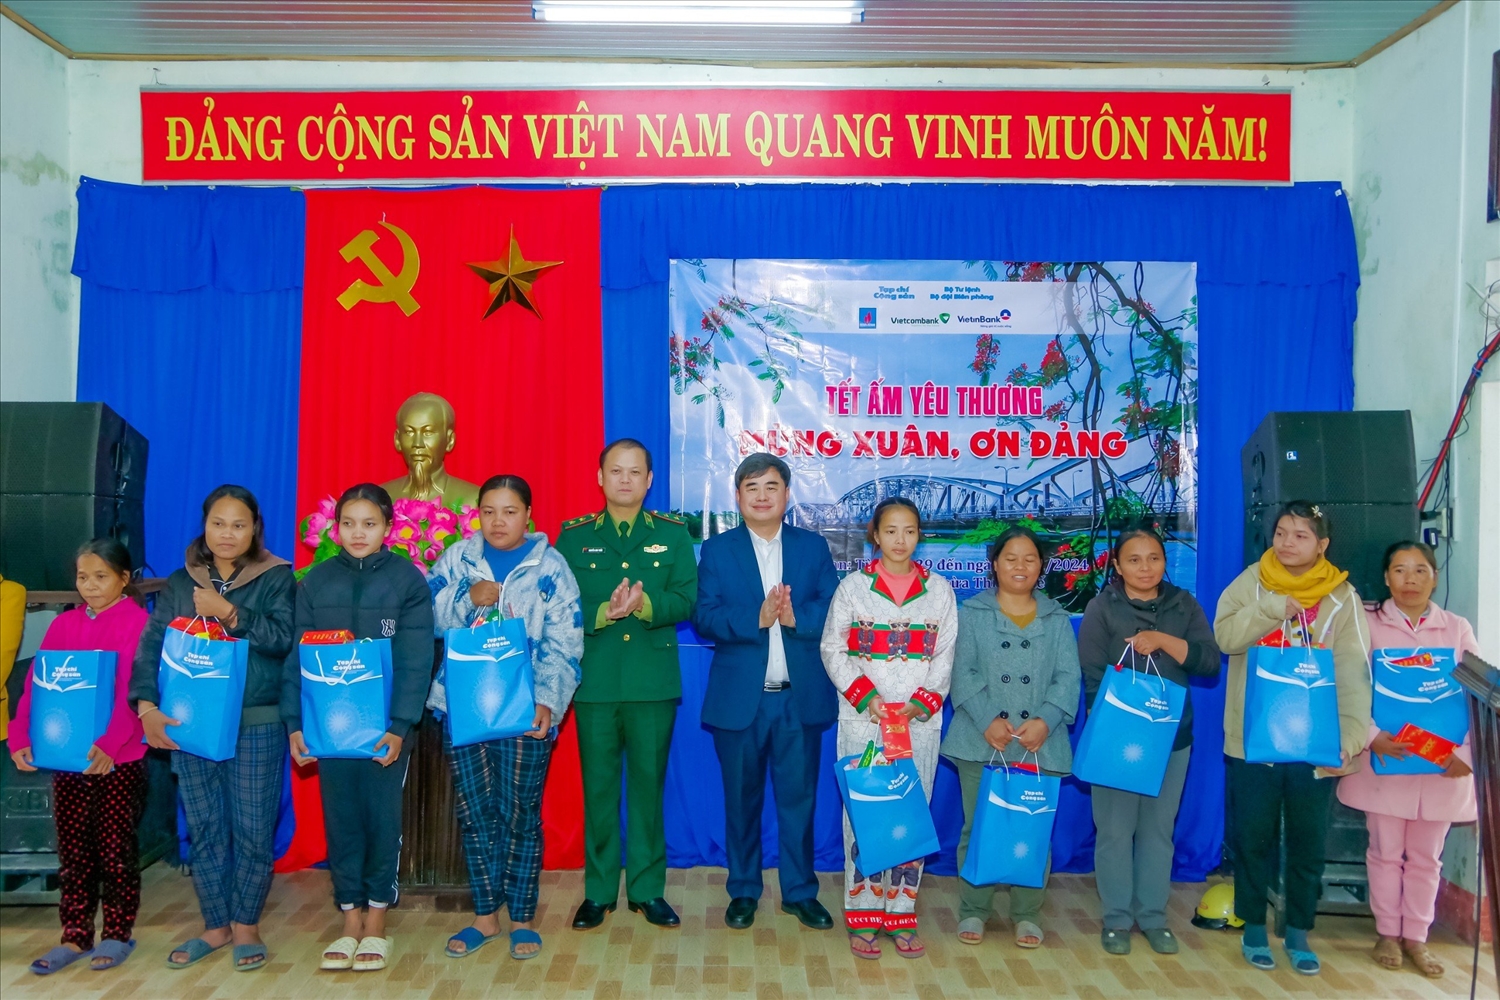 Trung tướng Nguyễn Anh Tuấn và Phó Tổng biên tập phụ trách Tạp chí Cộng sản Phạm Minh Tuấn trao tặng quà cho bà con